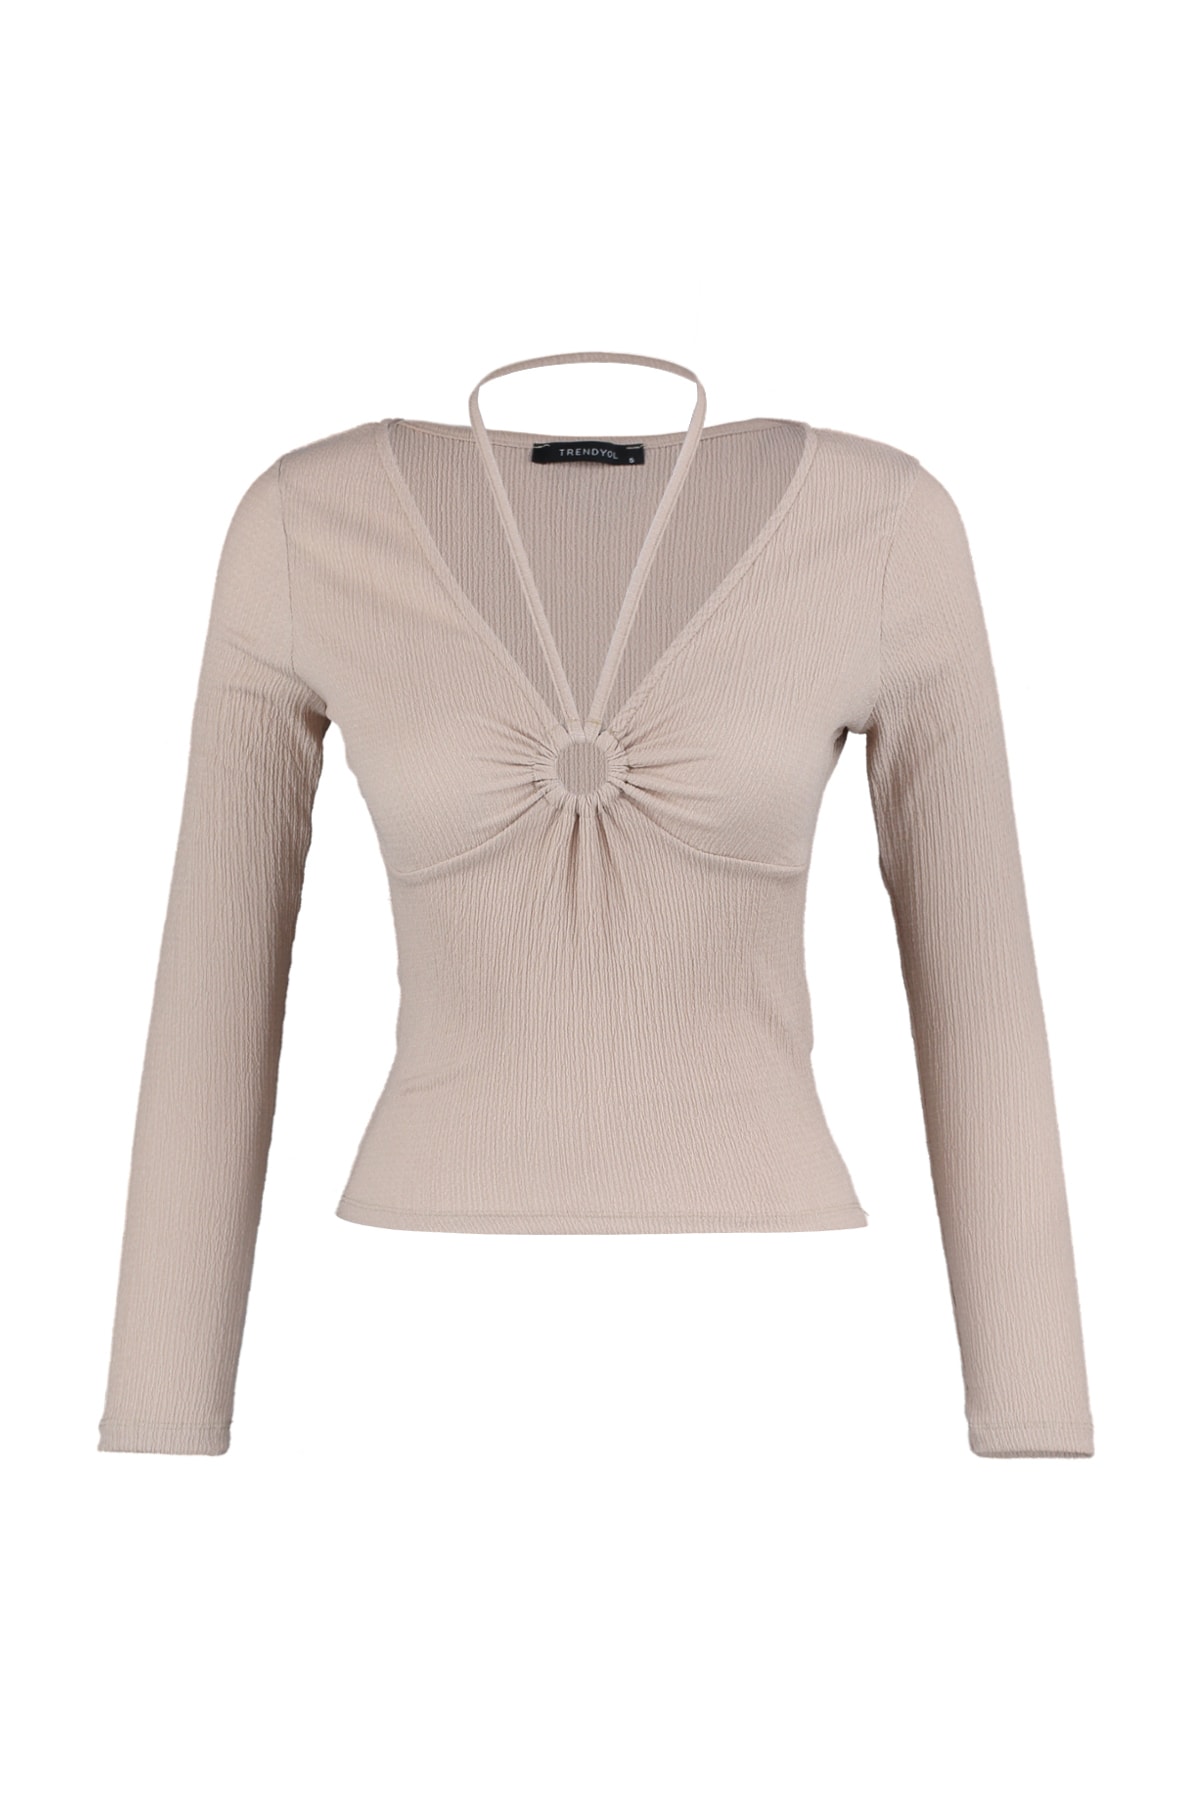 Trendyol Collection Bluse Beige Slim Fit Fast ausverkauft